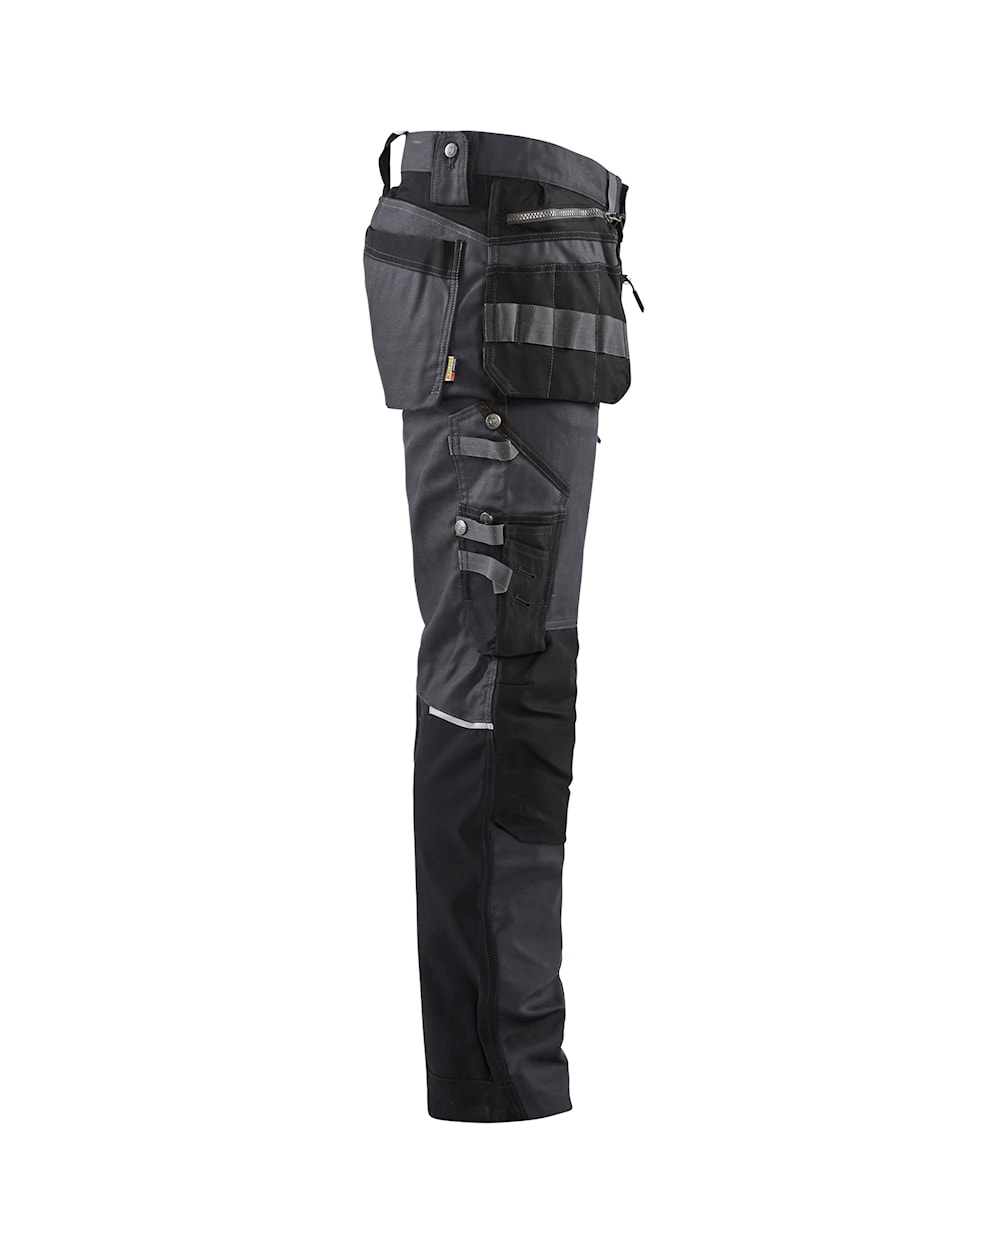 Blaklader Craftsman Trousers with Stretch 15991343 - Dark Grey/Black